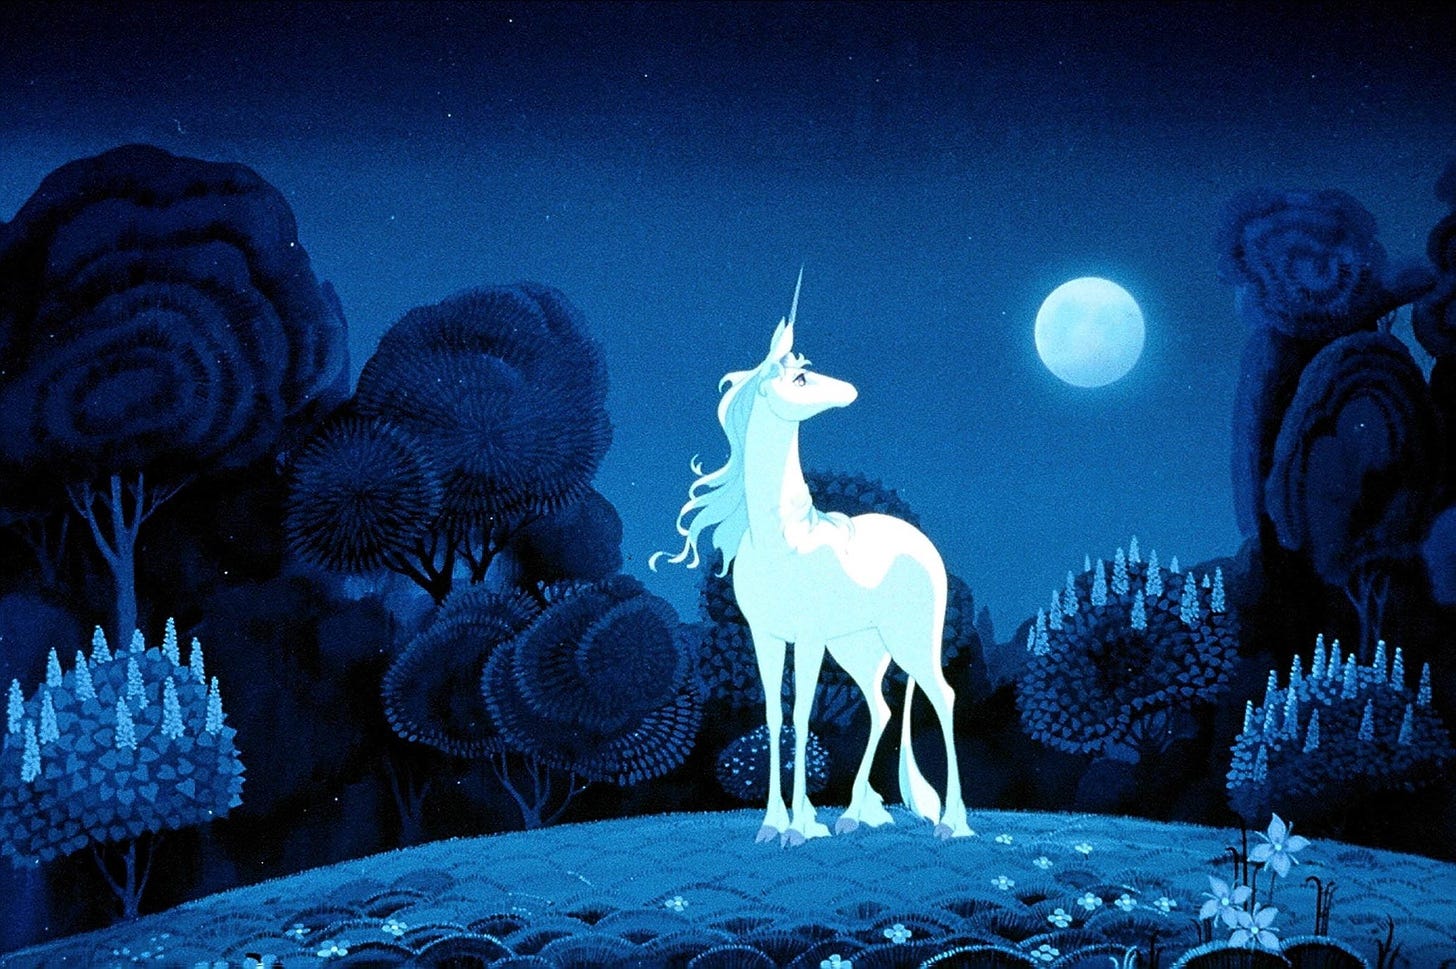 Una scena del film animato L'ultimo unicorno. L'unicorno, bianca, si staglia contro uno sfondo blu scuro che rappresenta una foresta